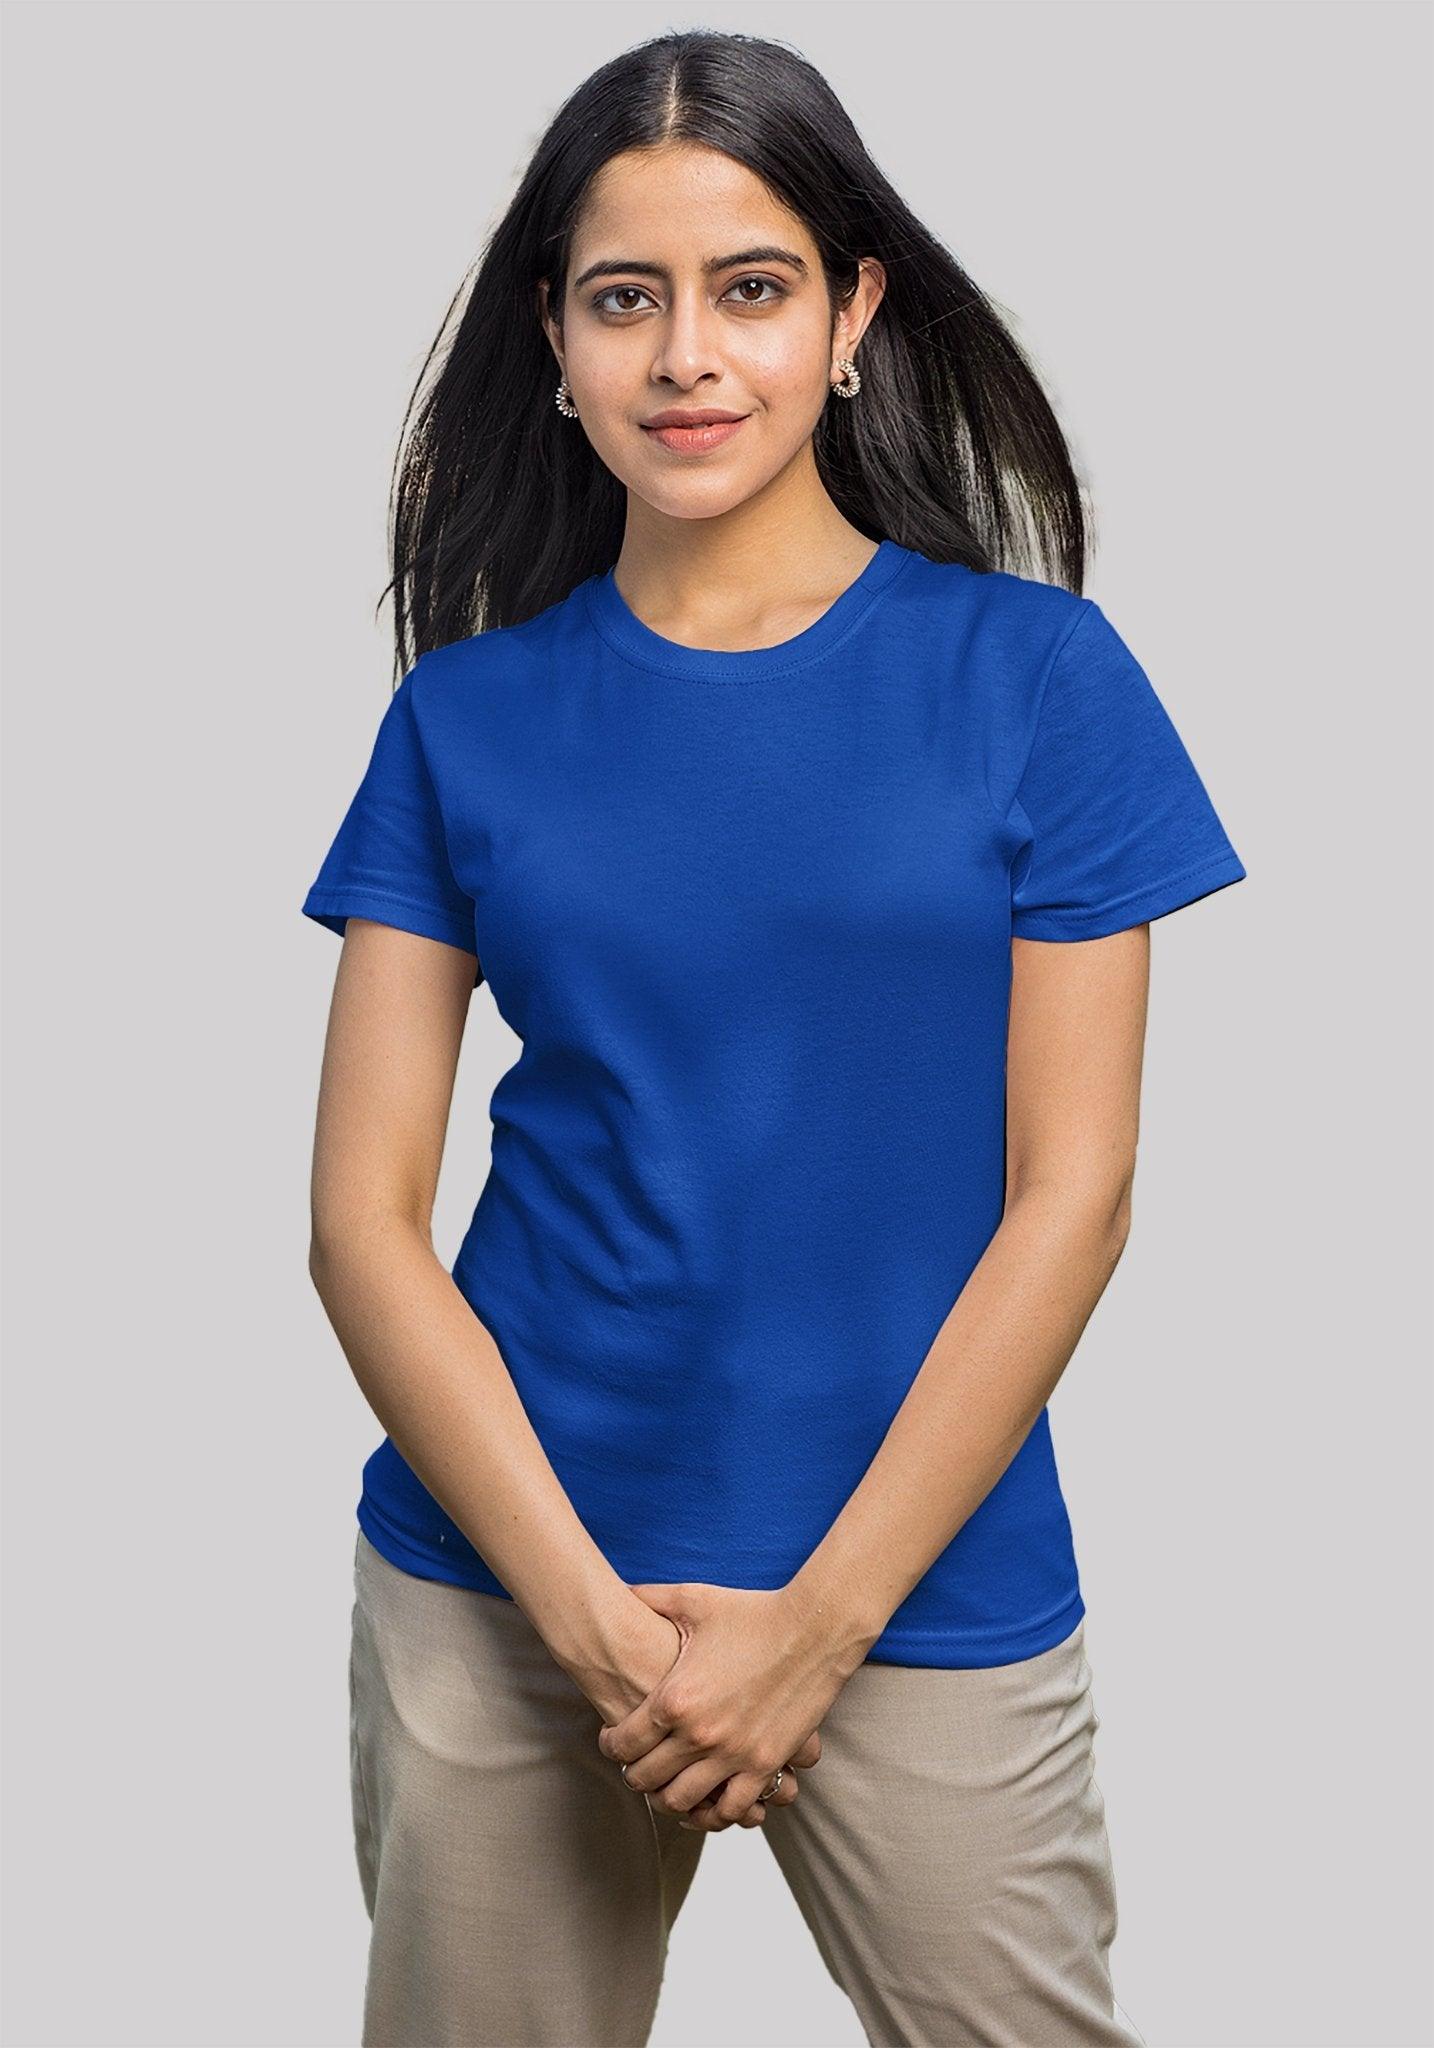 Women's Plain Solid t shirt Blue color - Hangout Hub